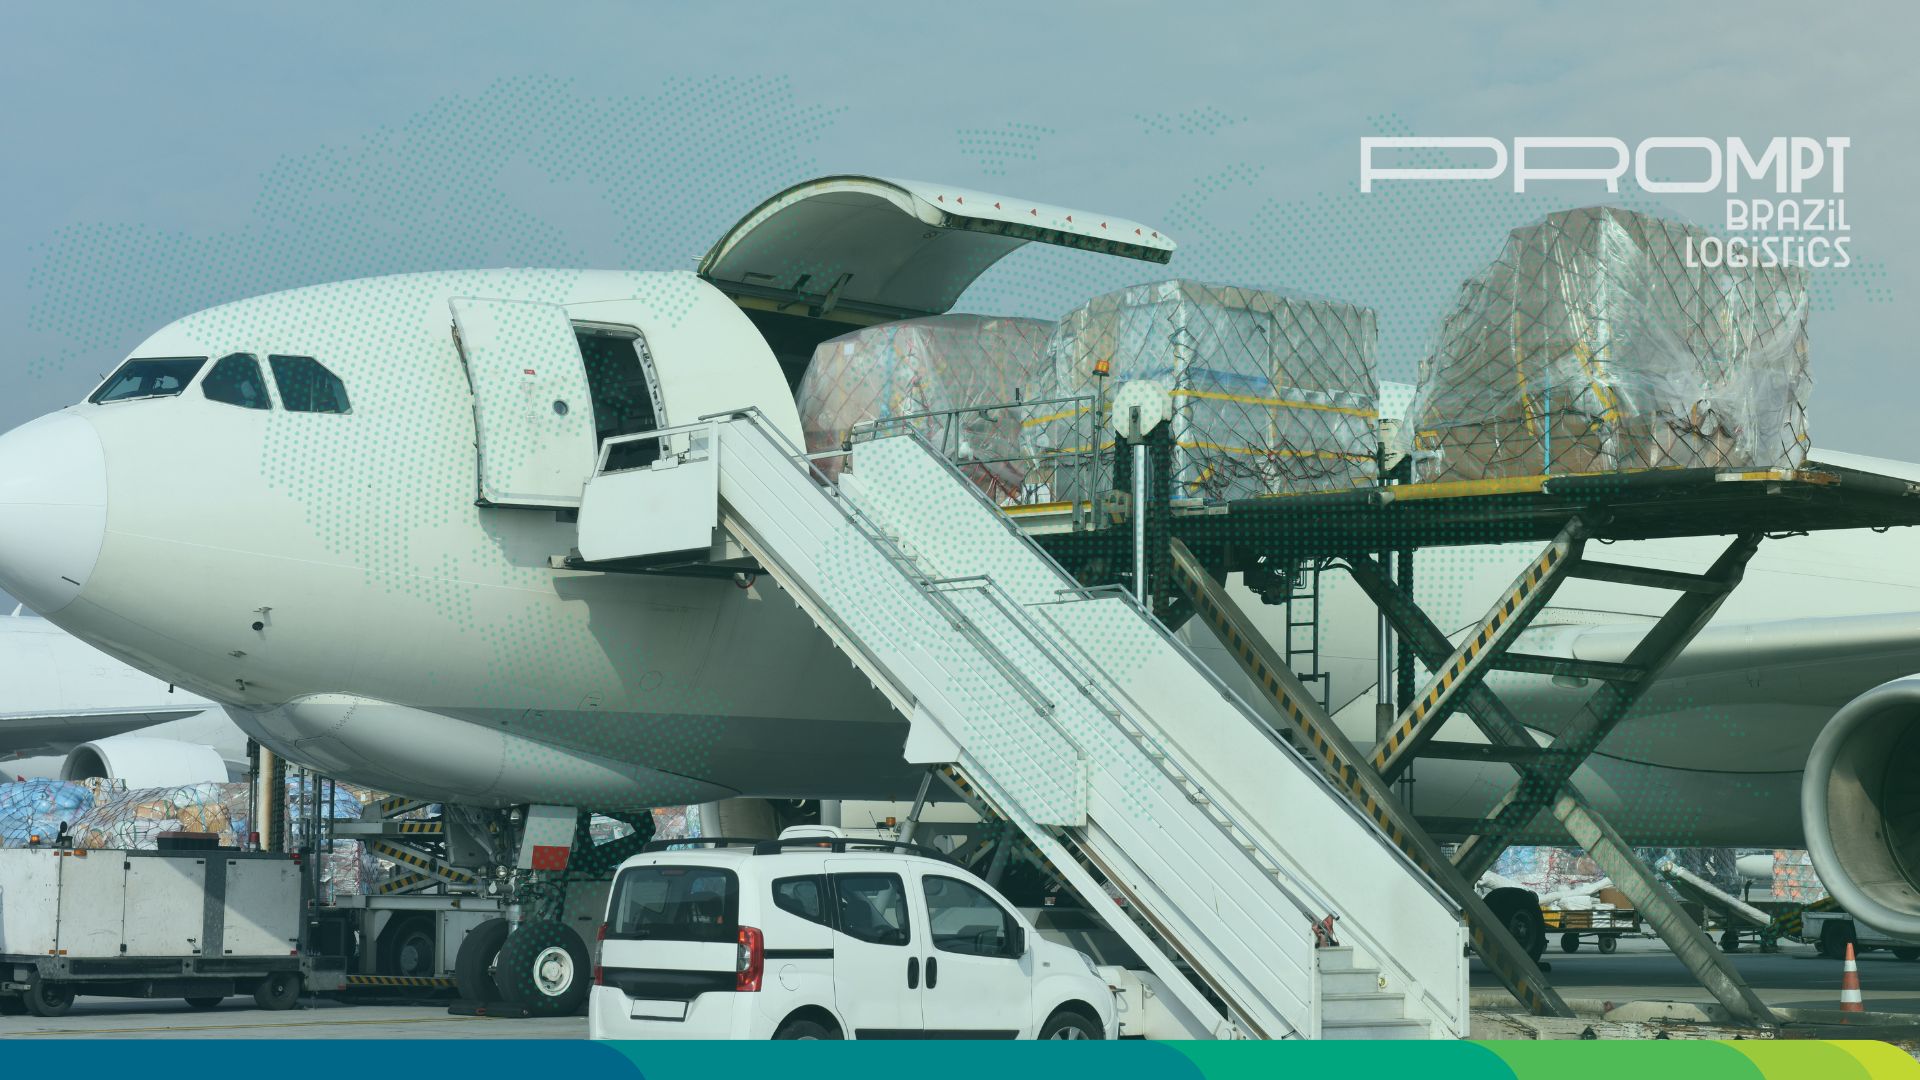 modal aéreo de transporte de cargas conheça as vantagens e desvantagens desse tipo de transporte entenda o que é e tudo que você precisa saber para importar ou exportar através desse meio de transporte de cargas prompt brazil